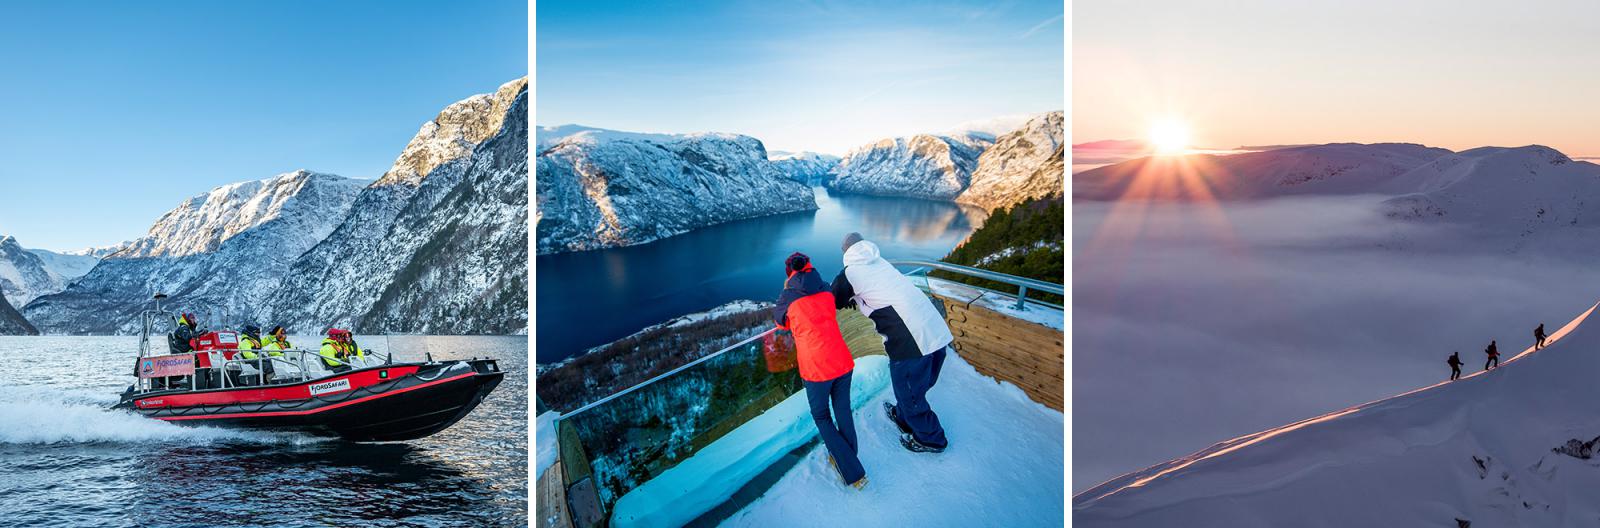 Outdoor in Sognefjord! Ga op een fjordsafari met een RIB-boot, bezoek het uitzichtpunt Stegastein en ga wandelen door het winterwonderland | Credits: GoFjords & sverrehjornevik.com Flåm AS & VERI Media